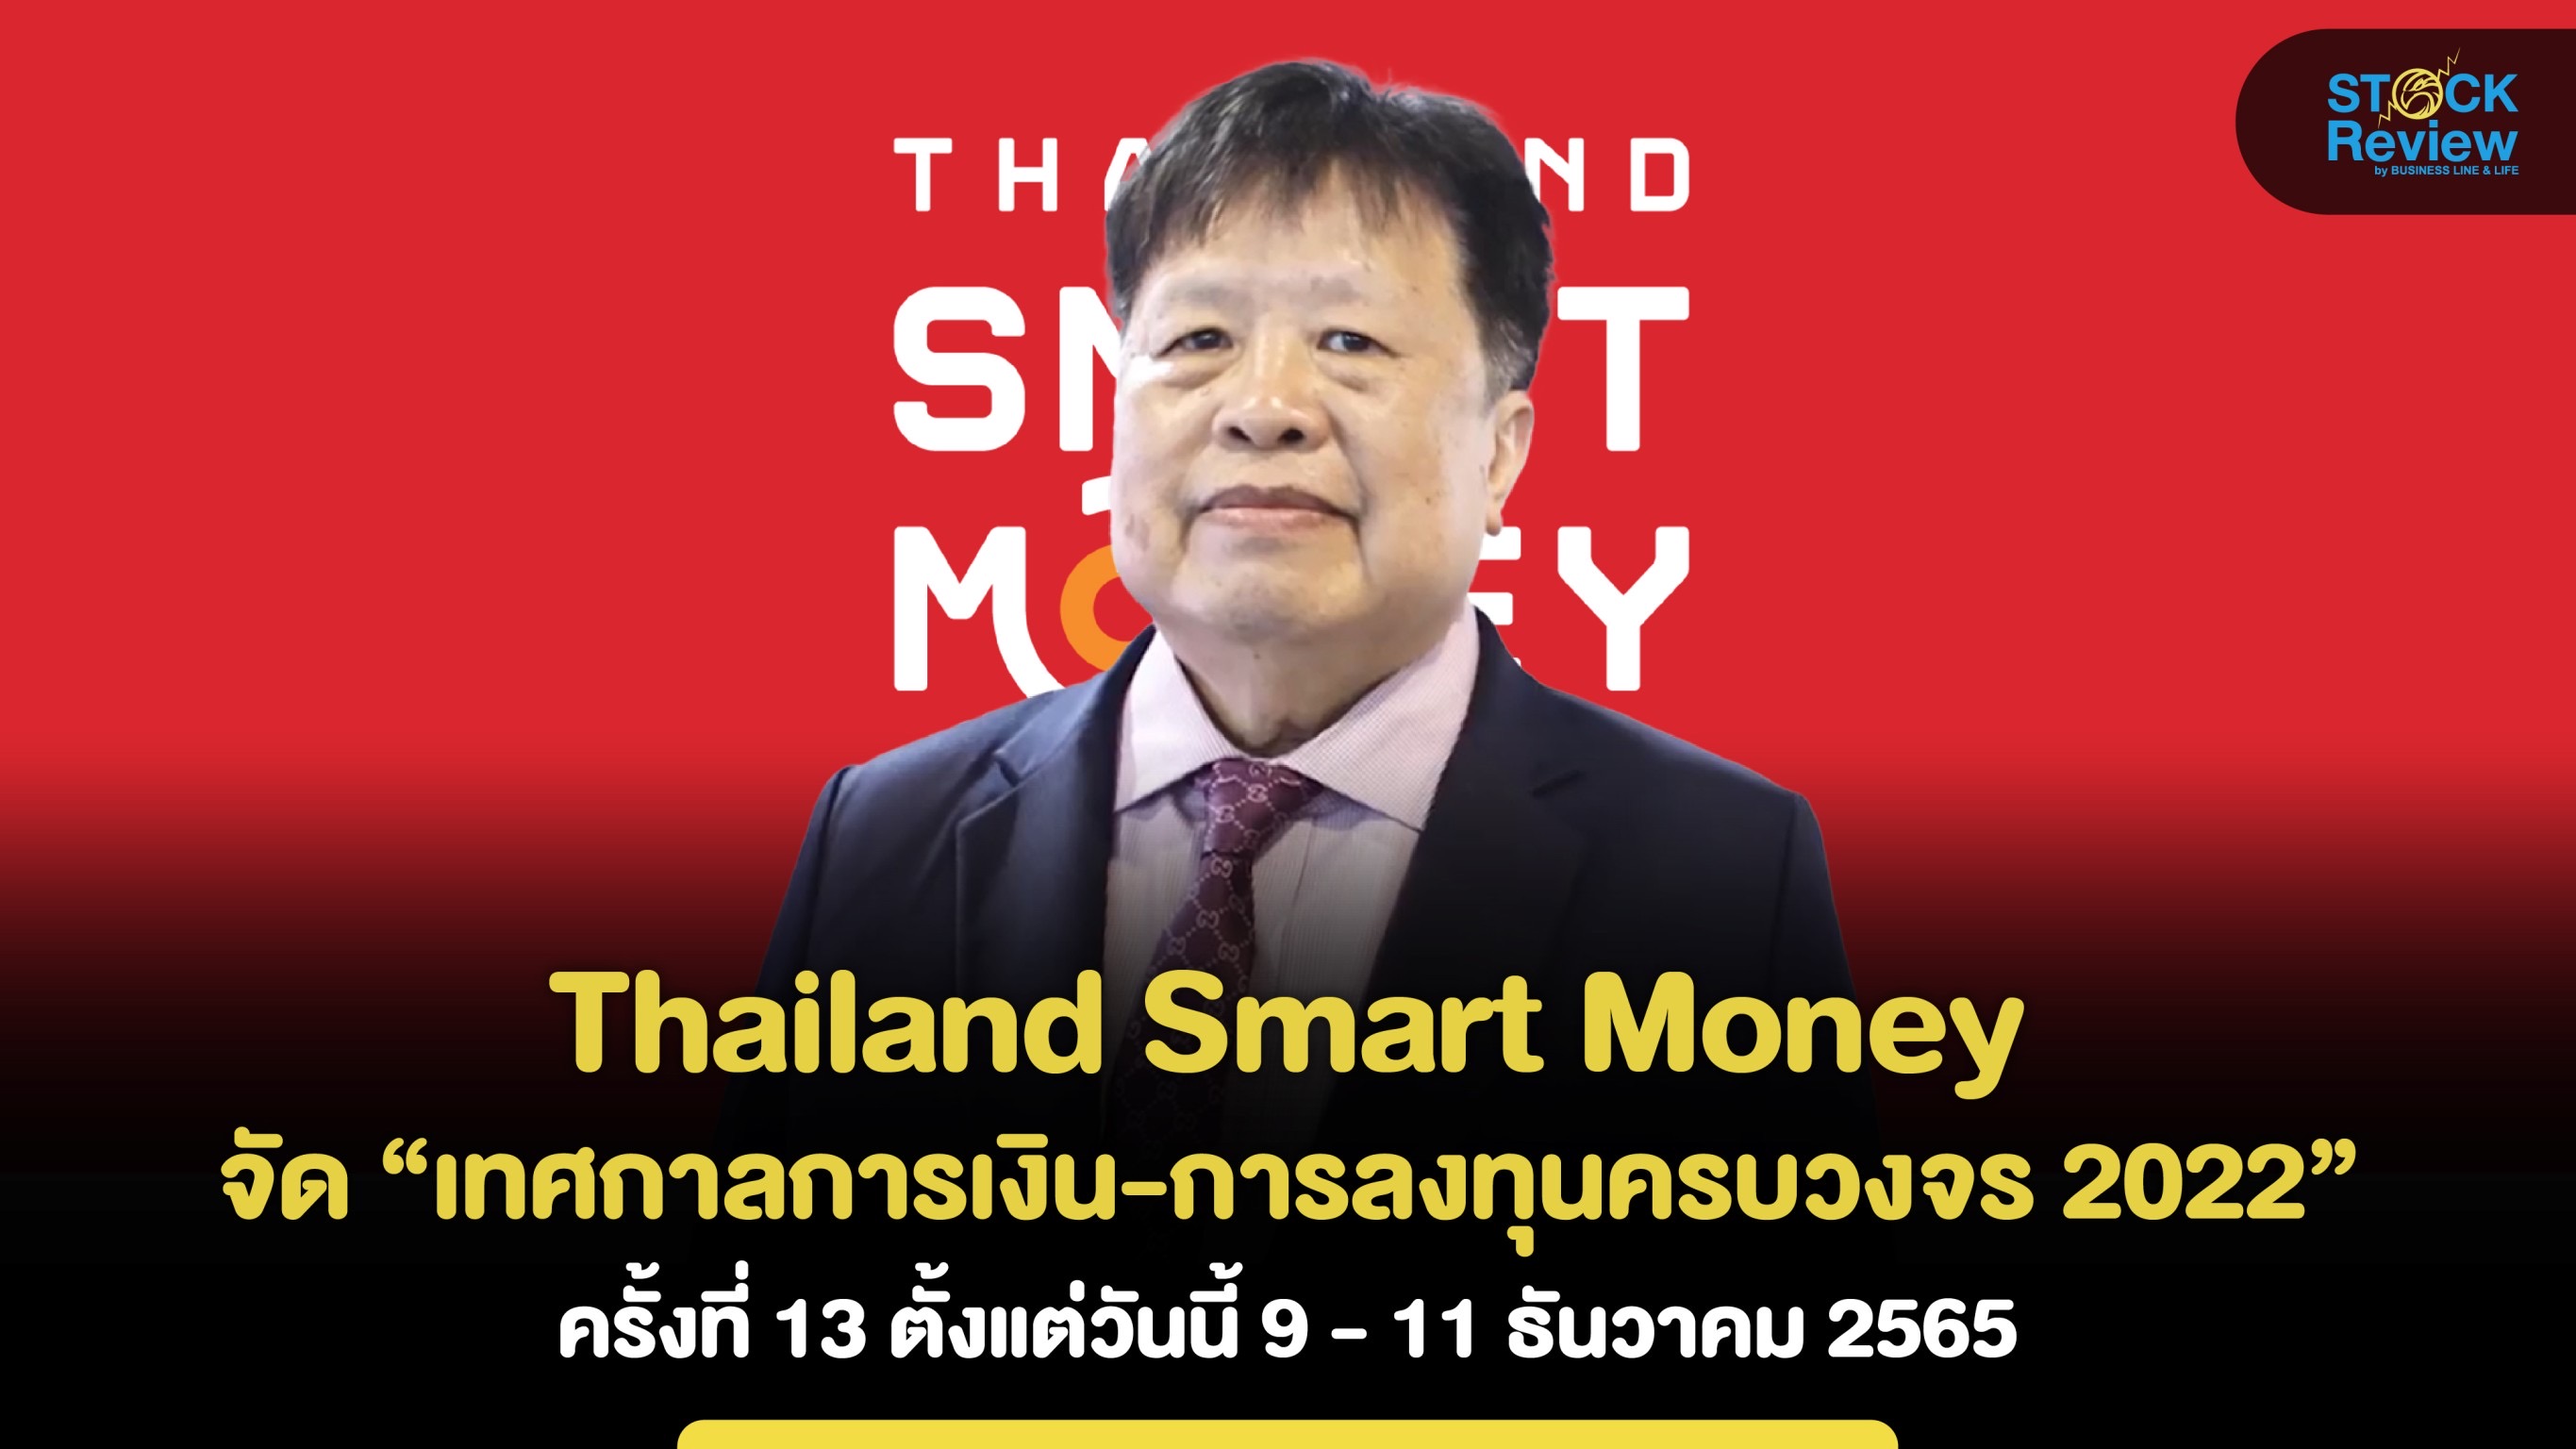 “Thailand Smart Money